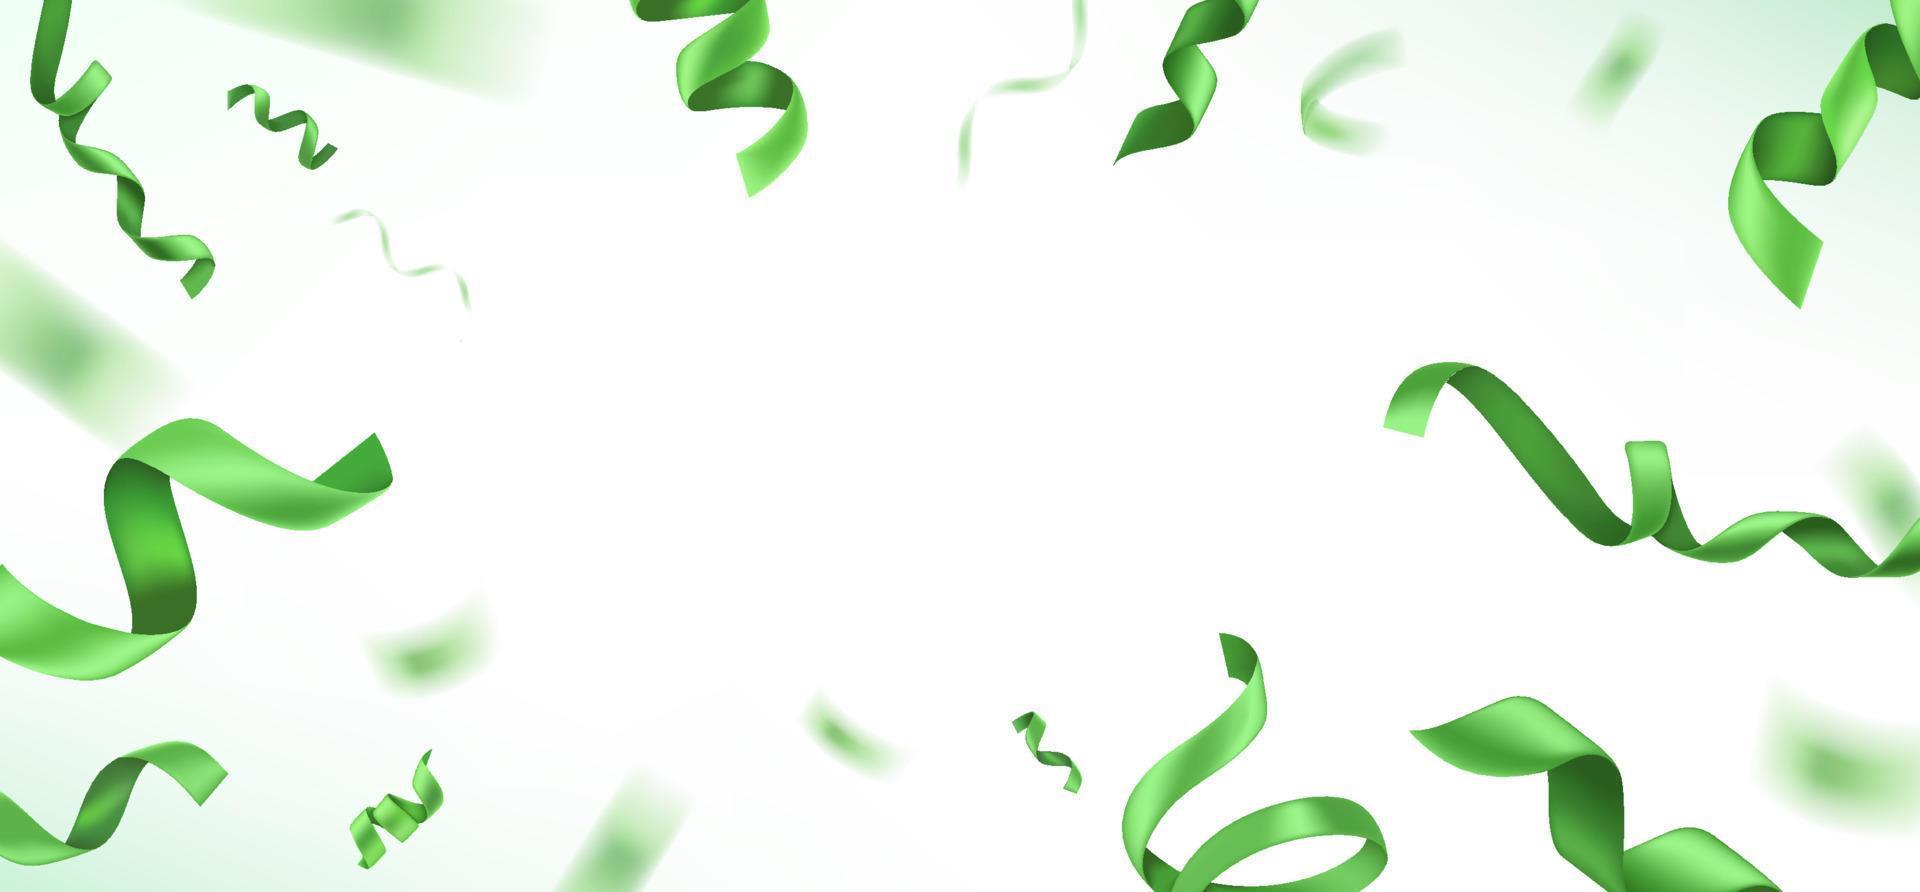 seda verde voando com fitas no fundo brilhante. ilustração vetorial realista com espaço de cópia. modelo de banner vetor